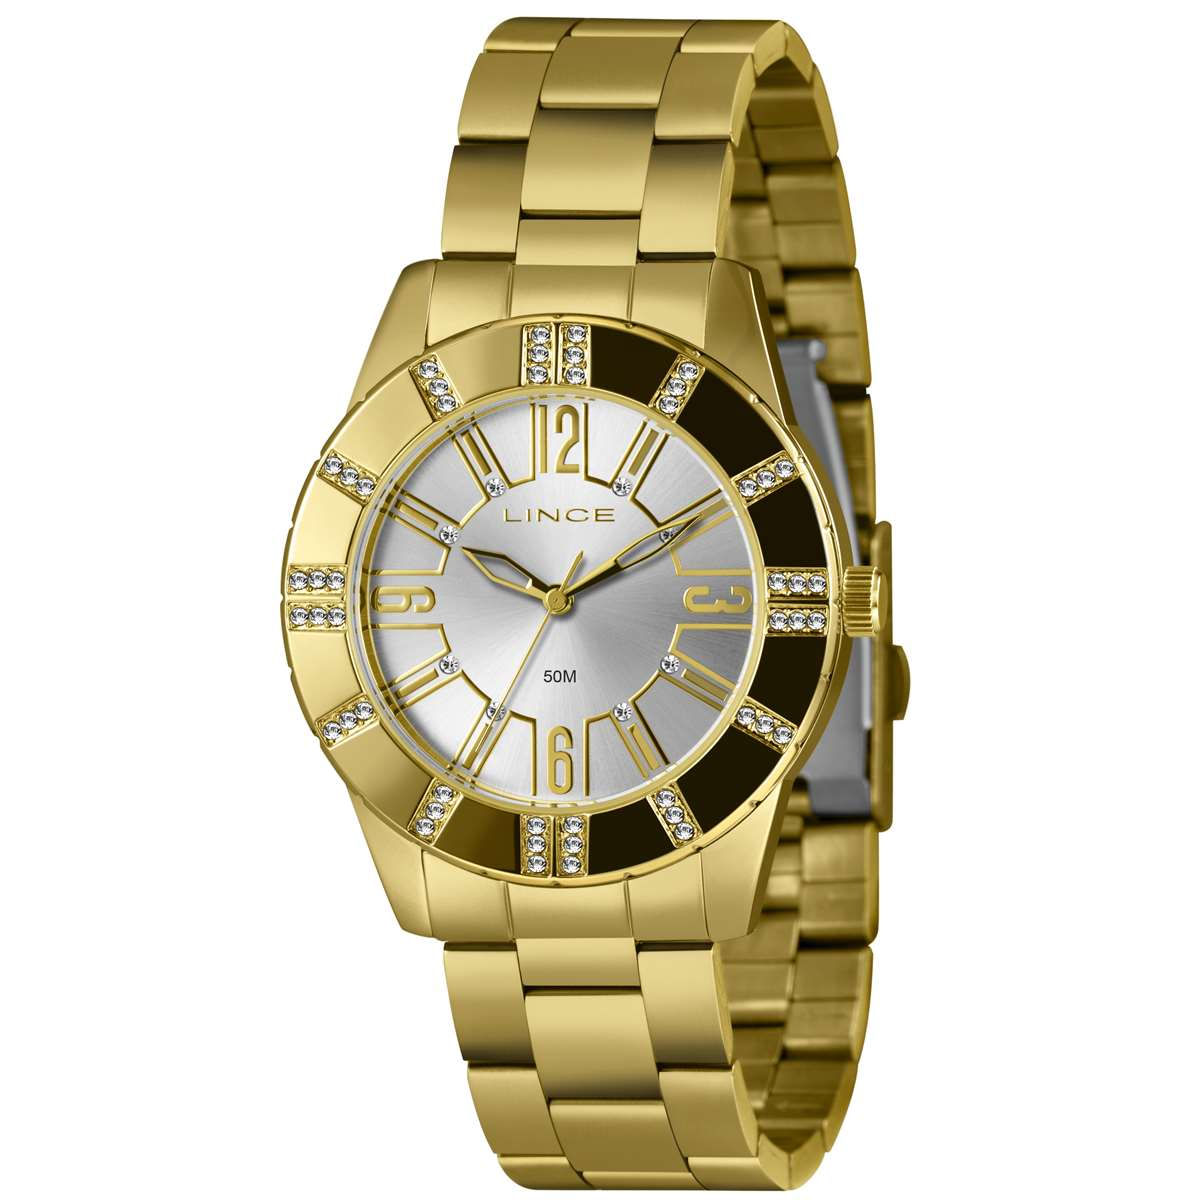 Relógio Lince Feminino Ref: Lrg4732l40 S2kx Casual Dourado